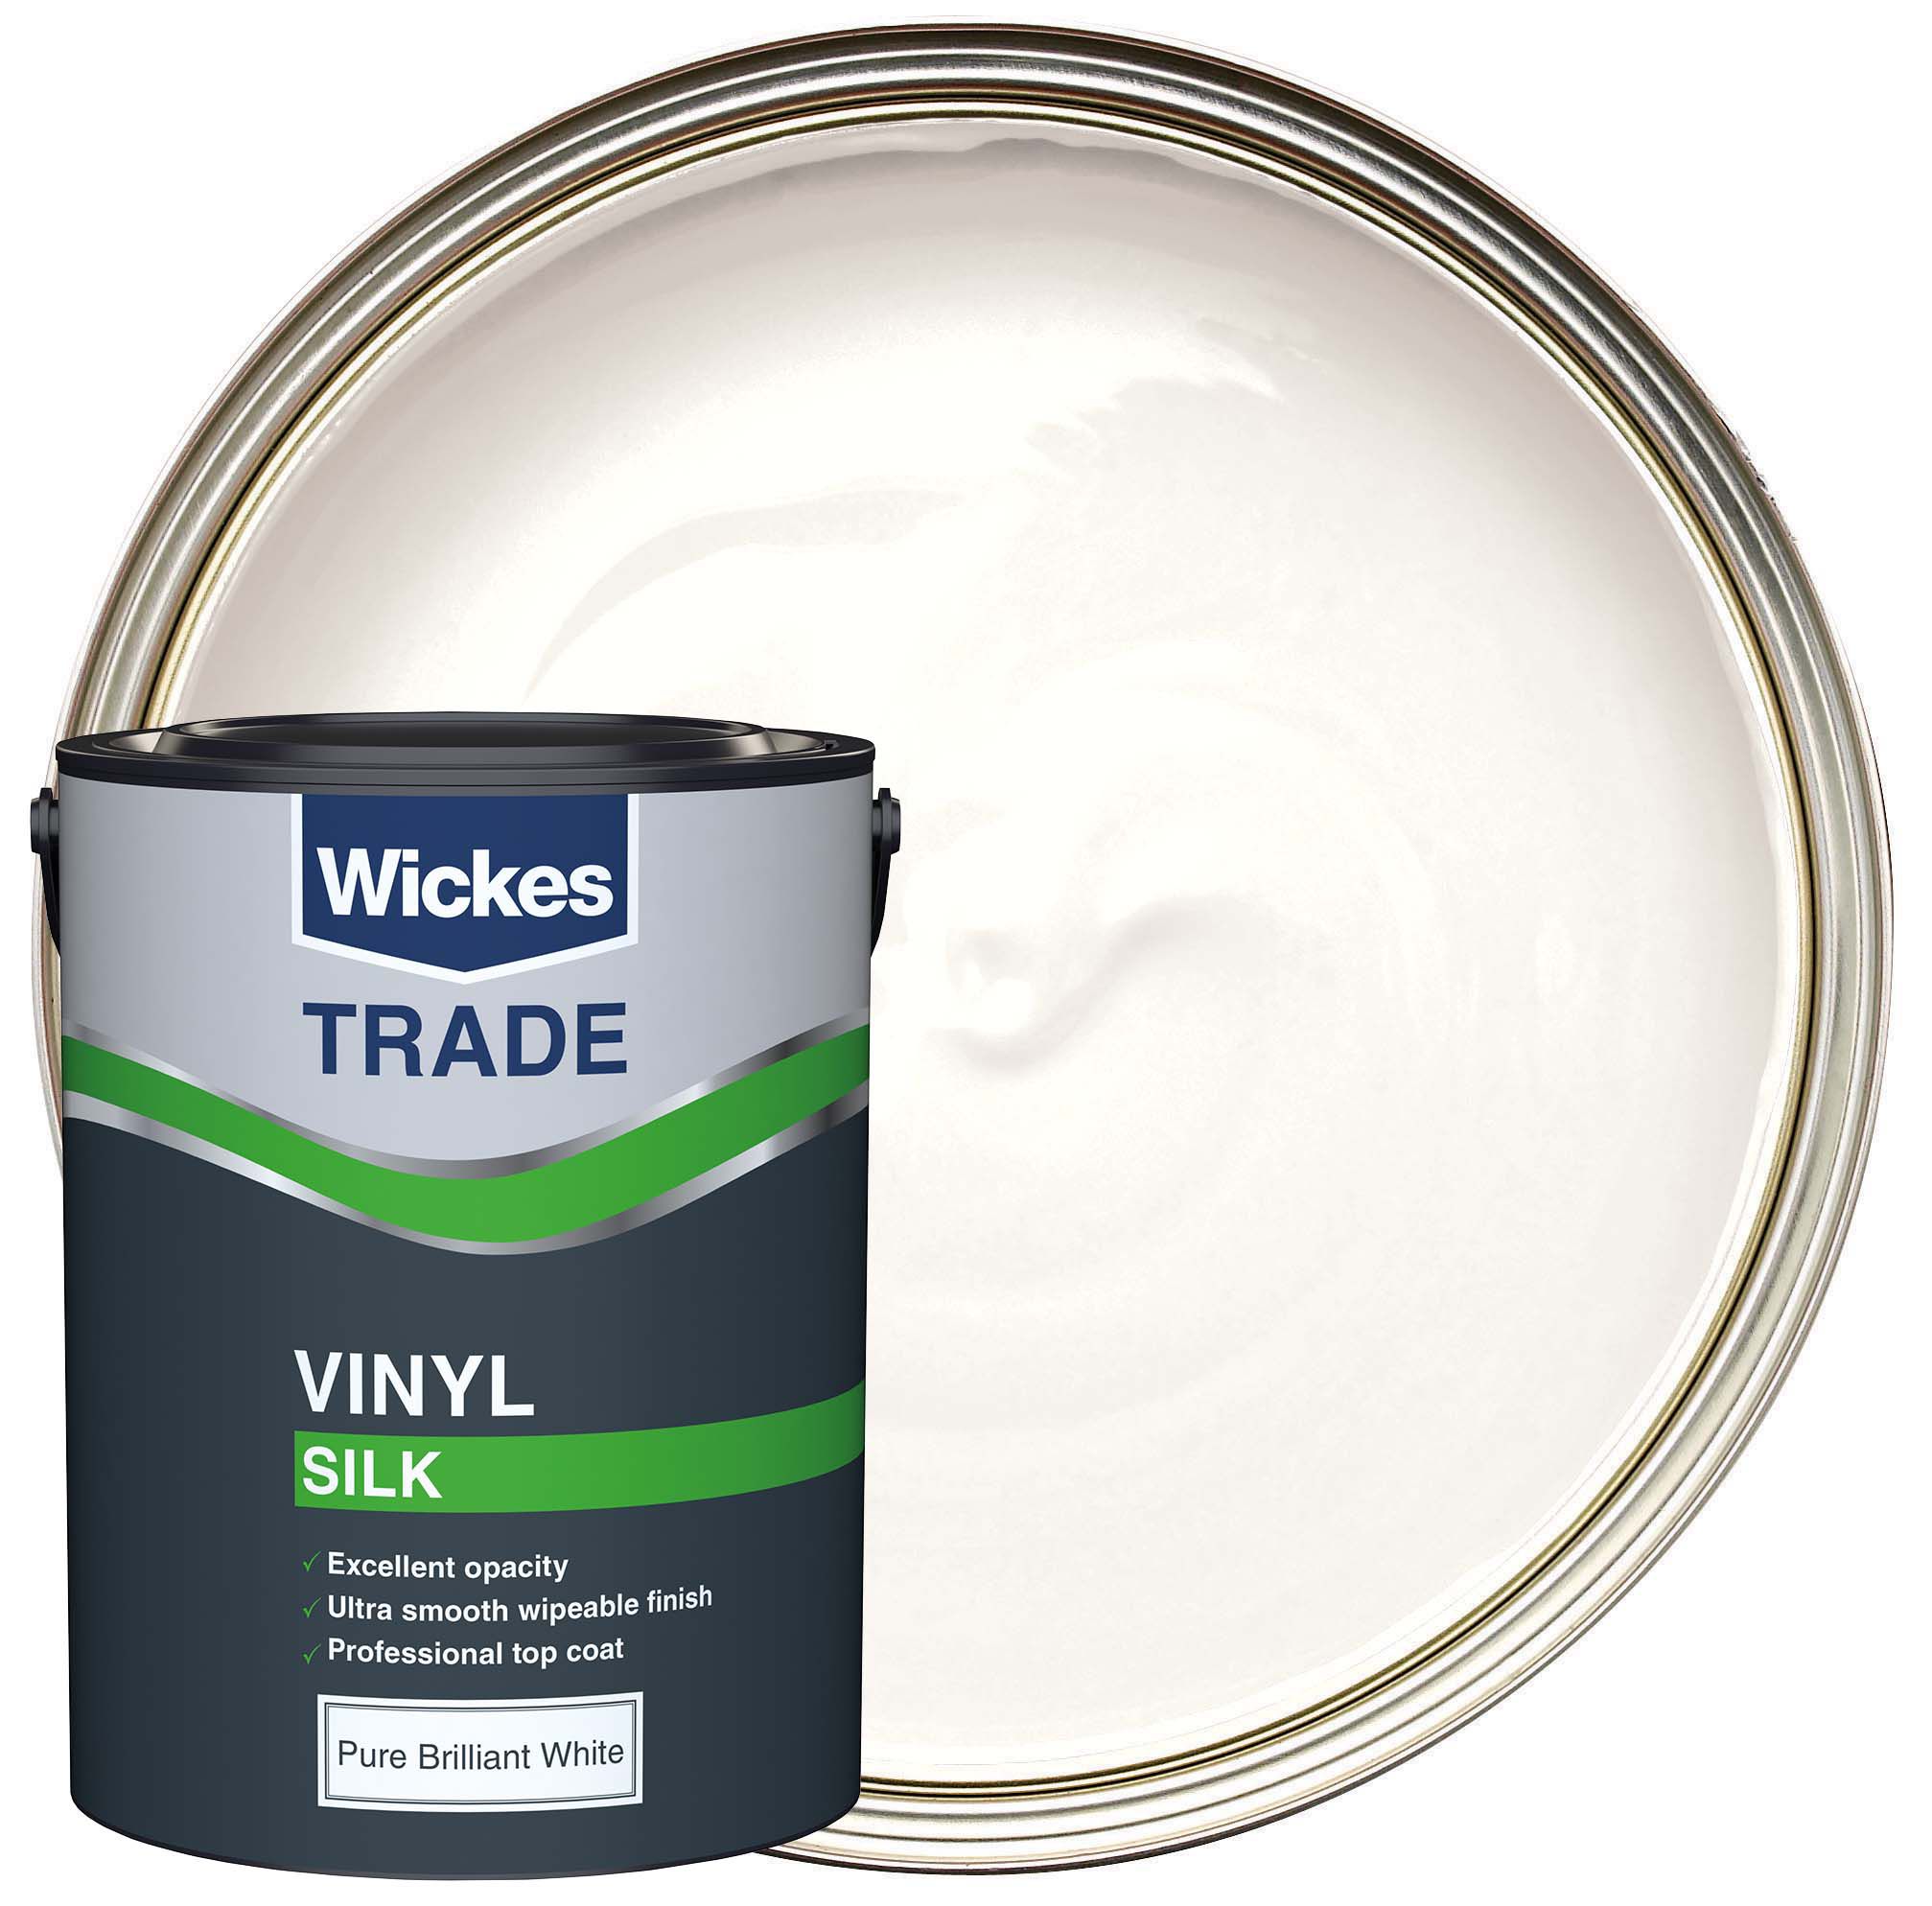 Image of Wickes Trade Vinyl Silk Emulsion Paint - Pure Brilliant White - 5L